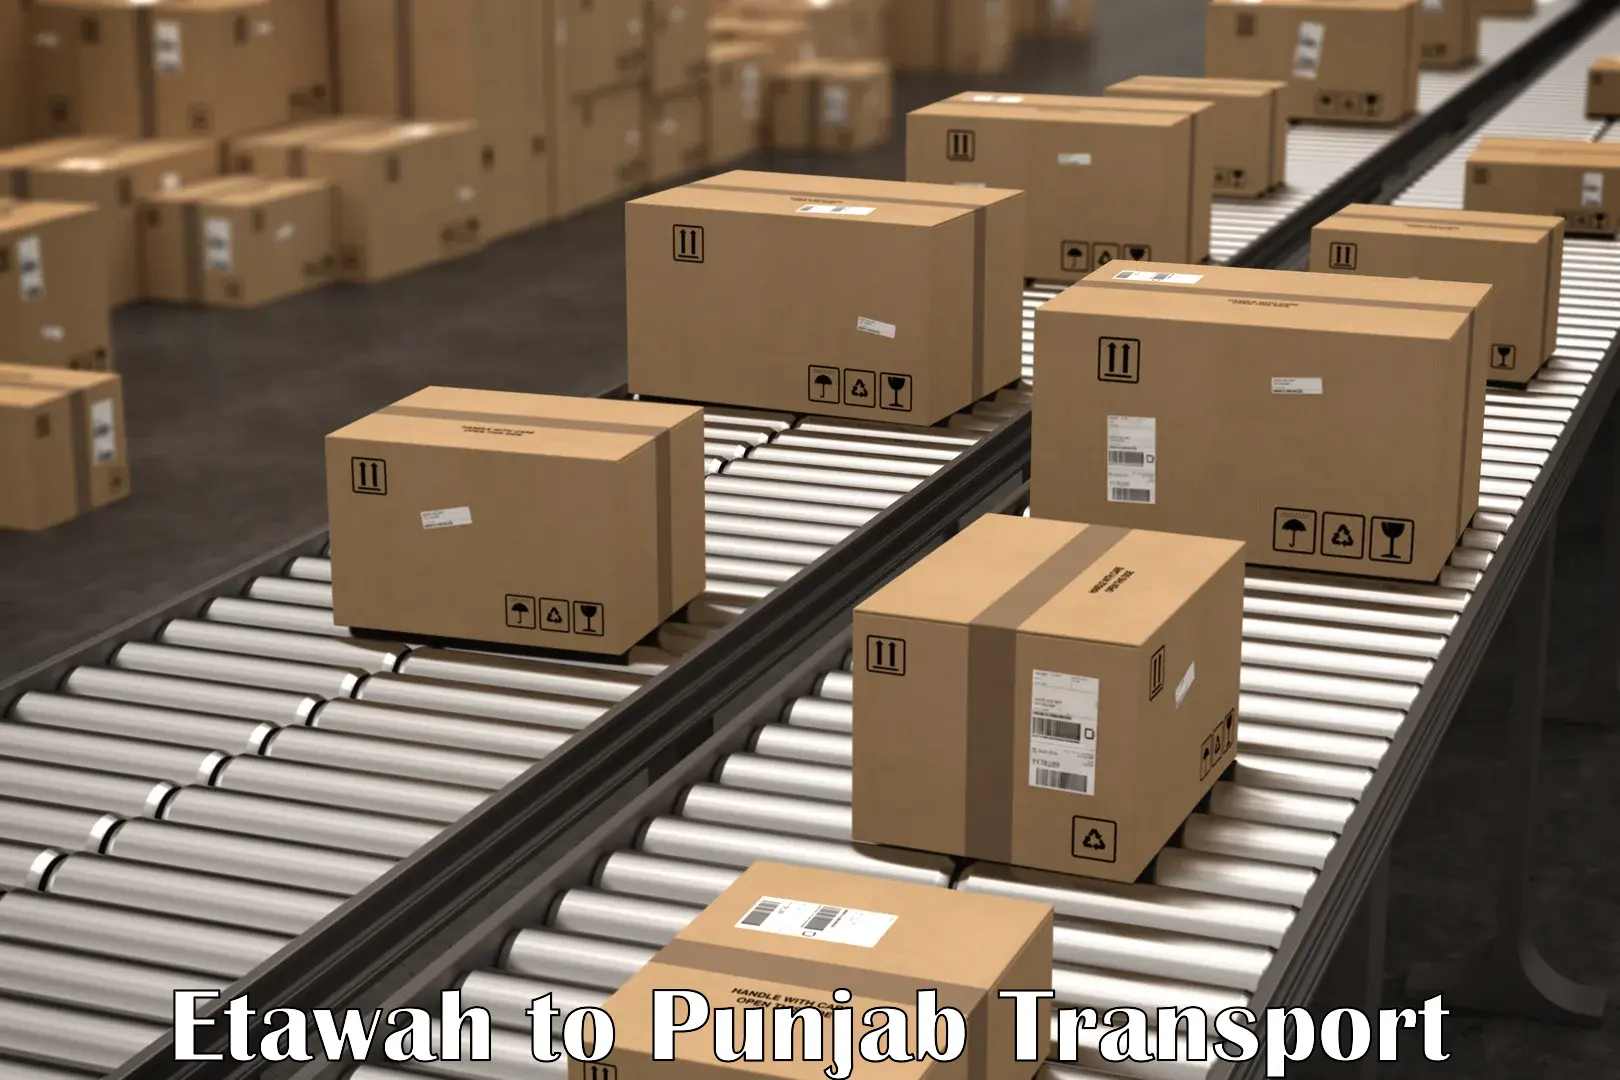 Parcel transport services Etawah to Punjab